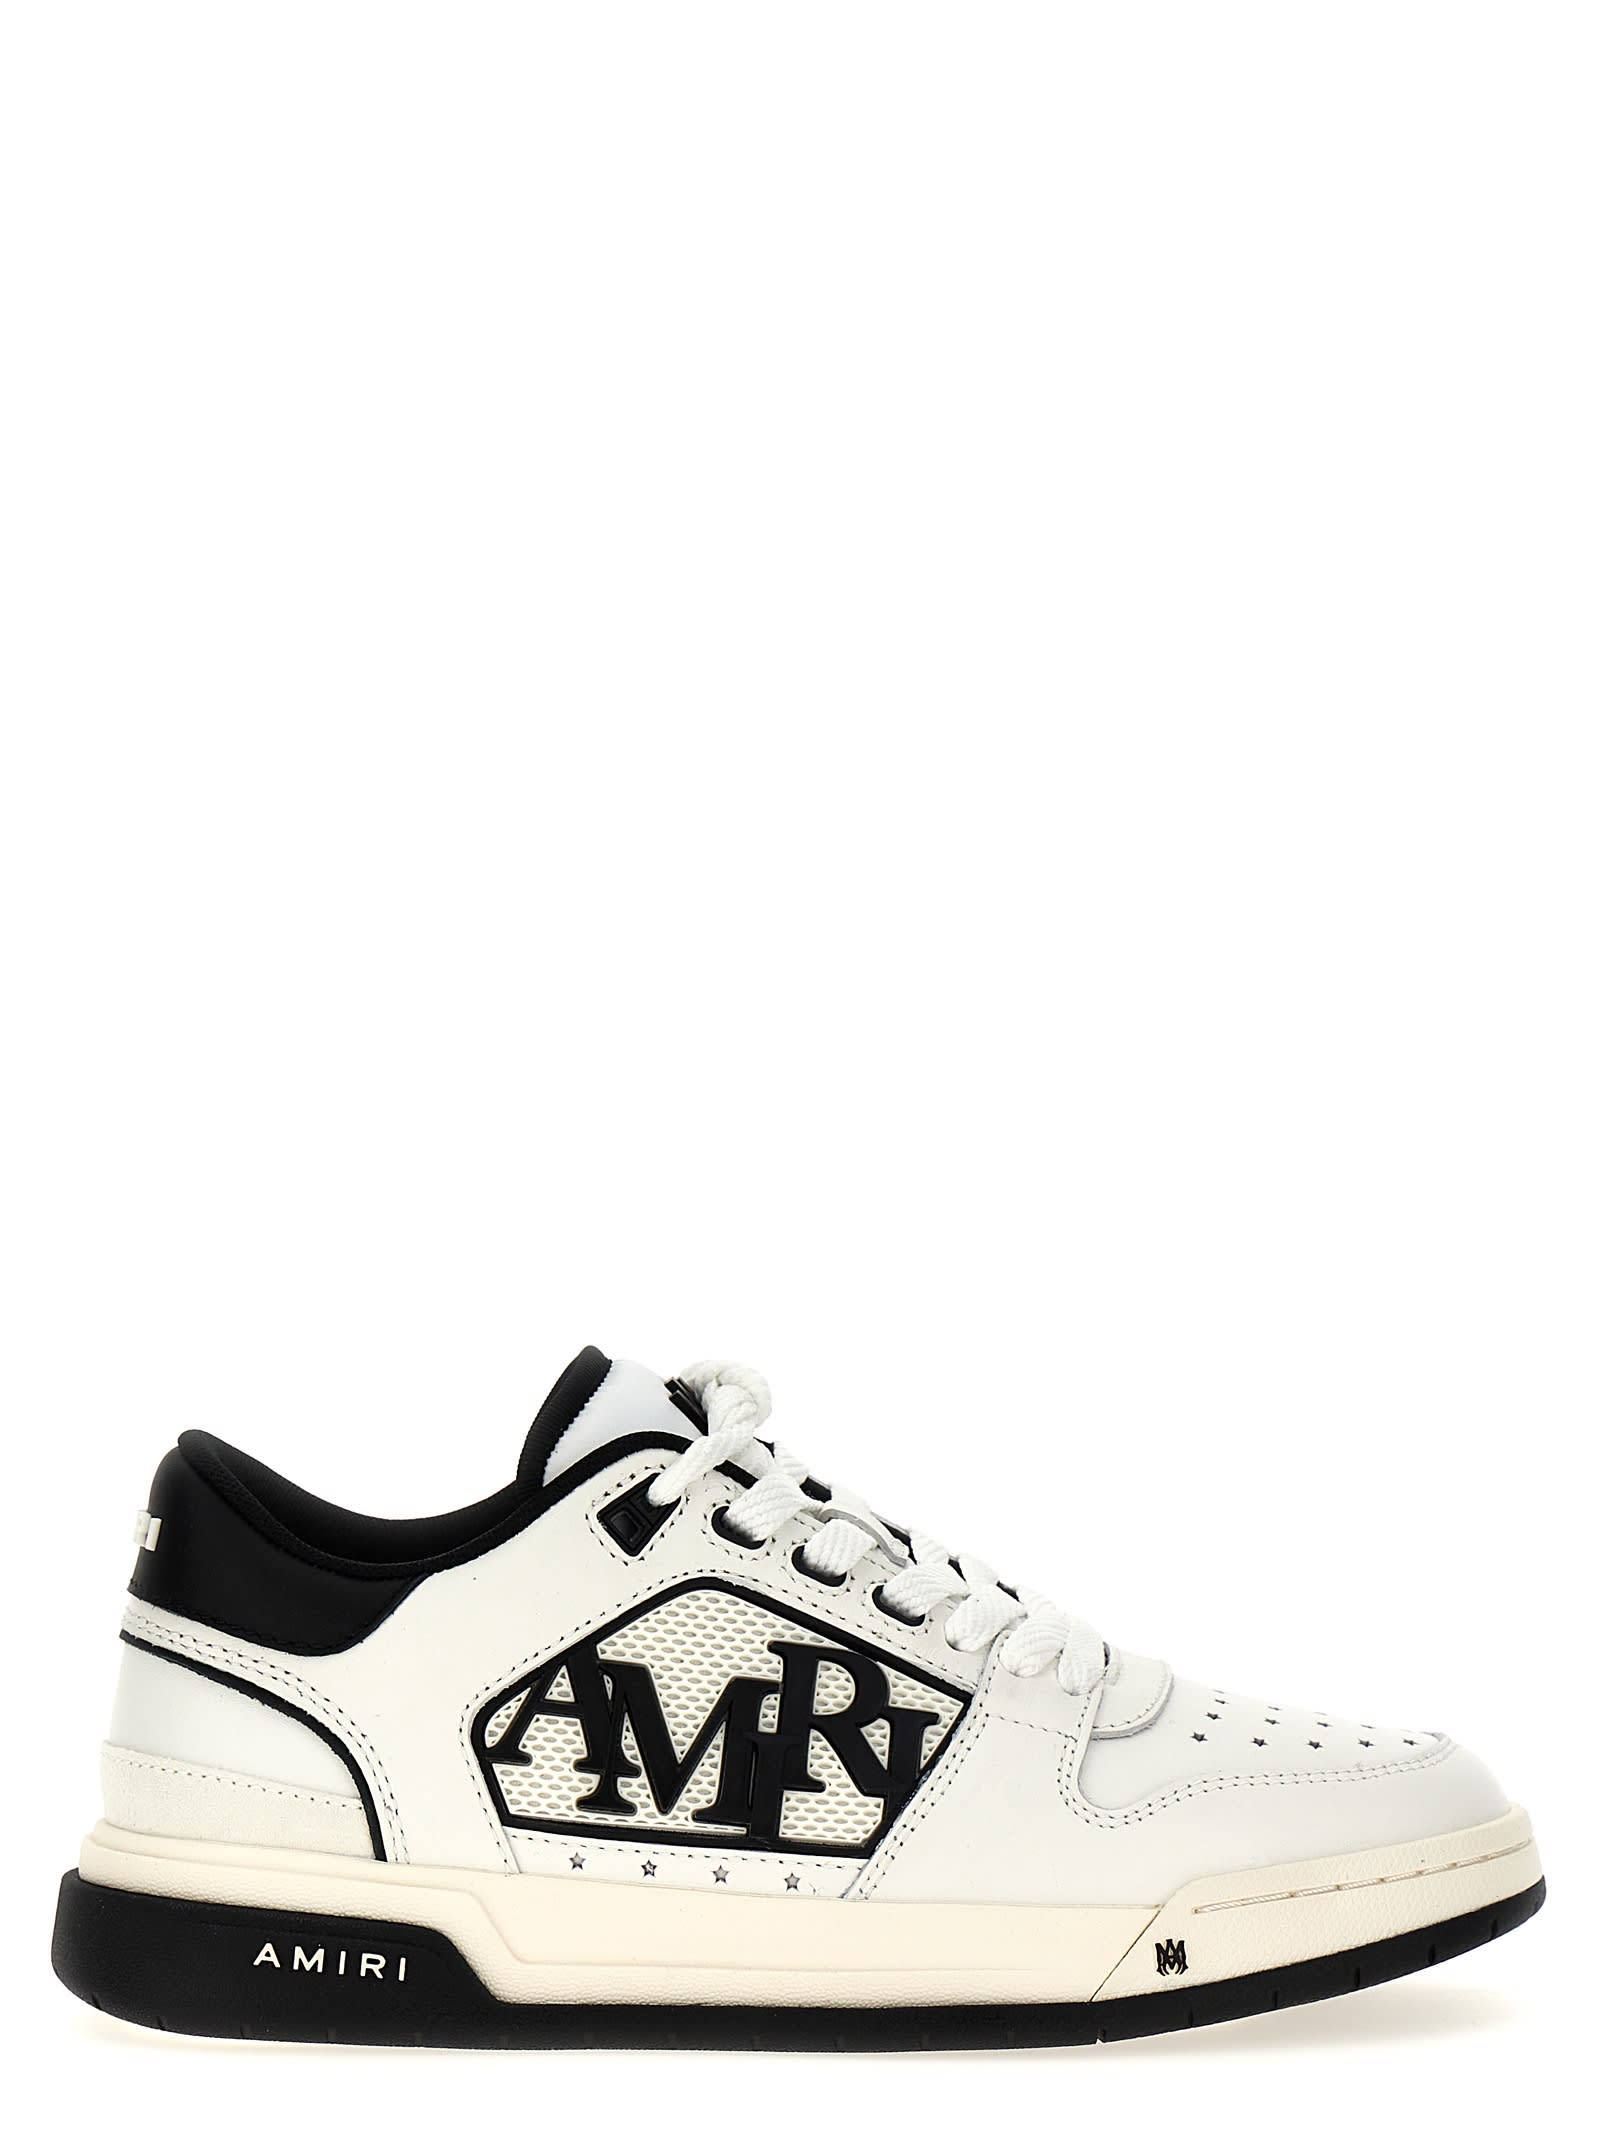 AMIRI classic Low Sneakers